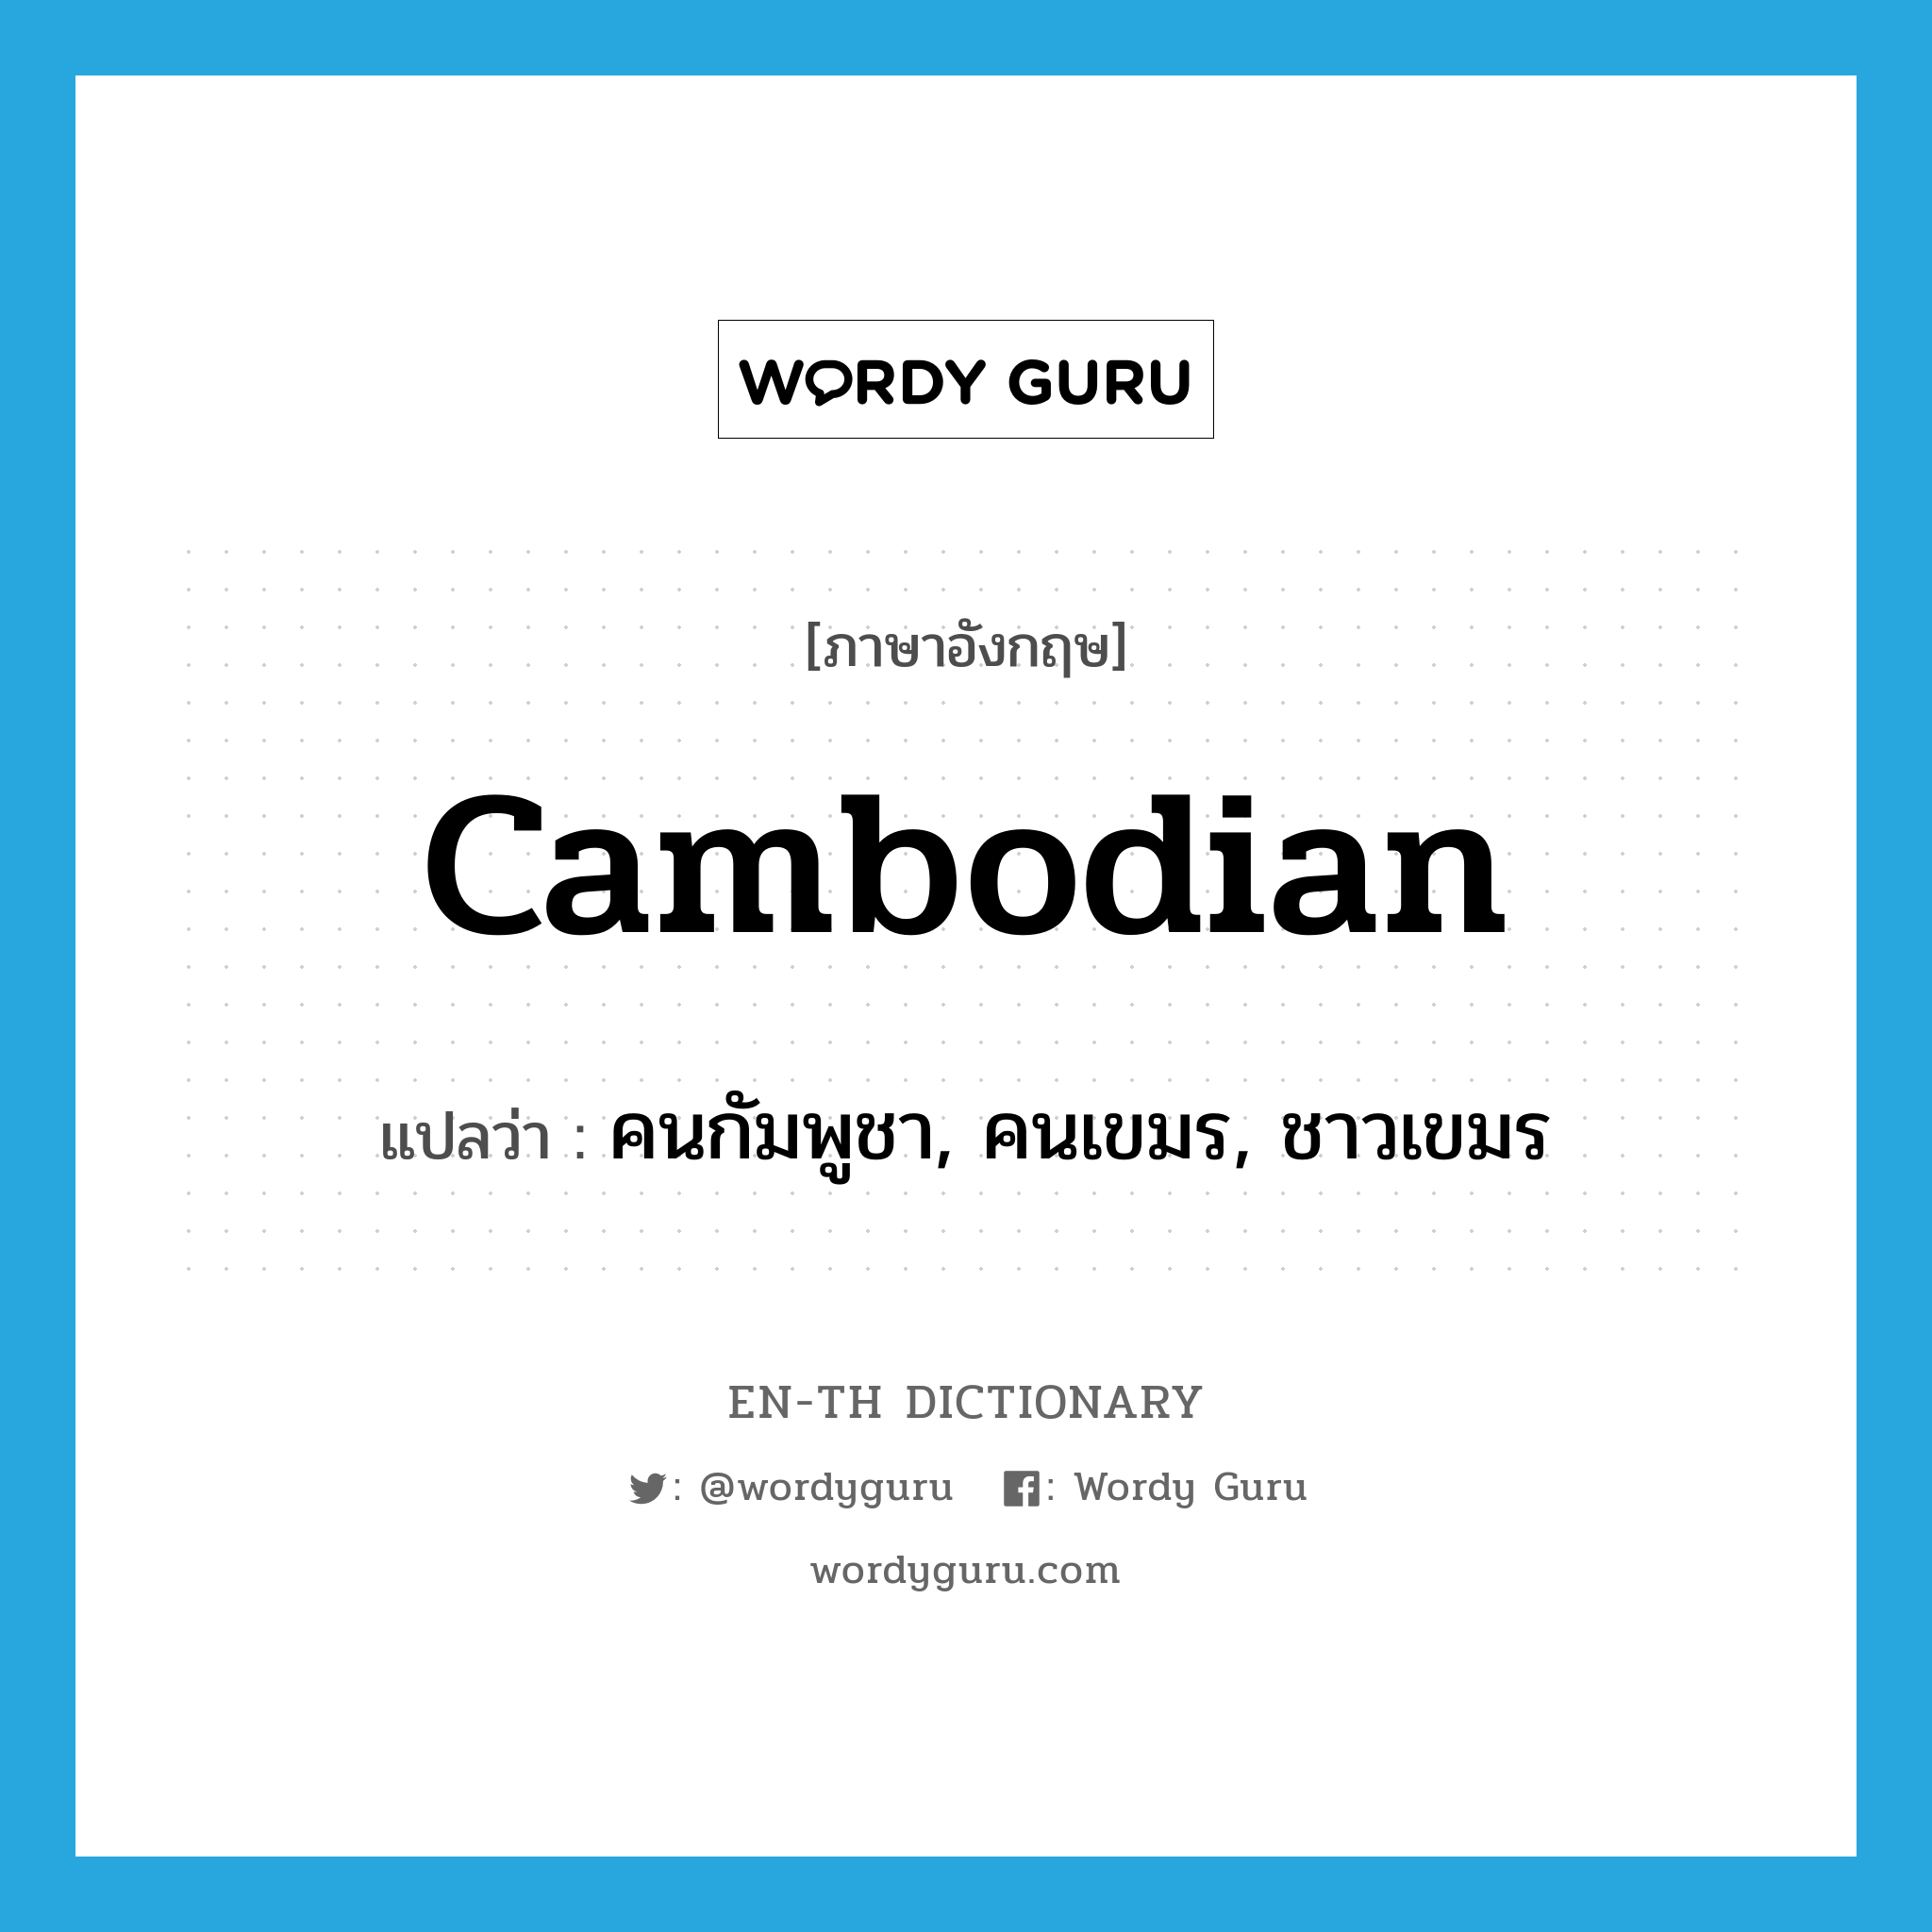 คนกัมพูชา, คนเขมร, ชาวเขมร ภาษาอังกฤษ?, คำศัพท์ภาษาอังกฤษ คนกัมพูชา, คนเขมร, ชาวเขมร แปลว่า Cambodian ประเภท N หมวด N